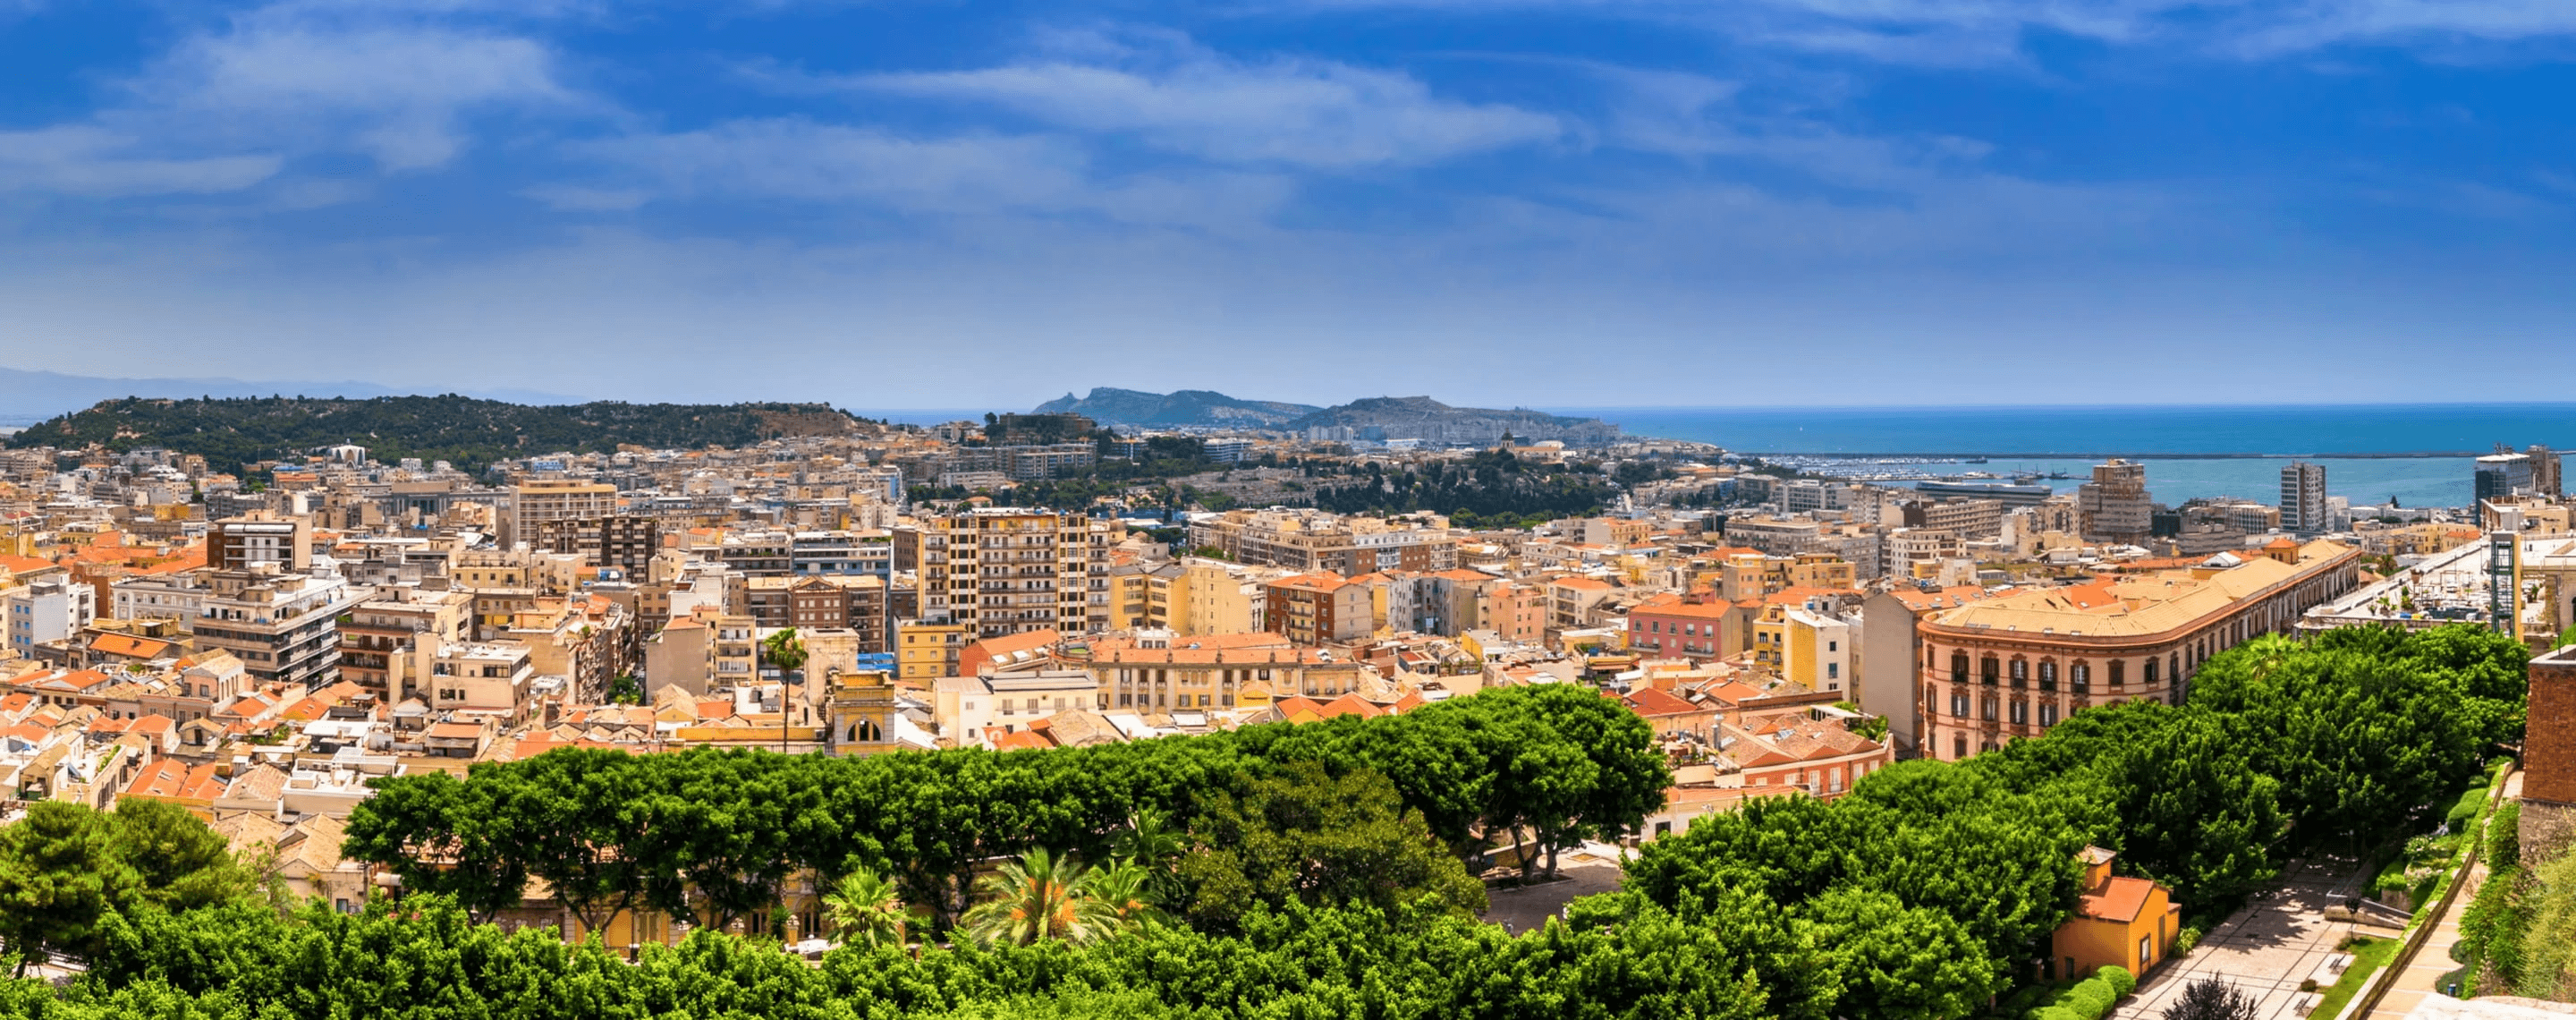 Cagliari auf Sardinien